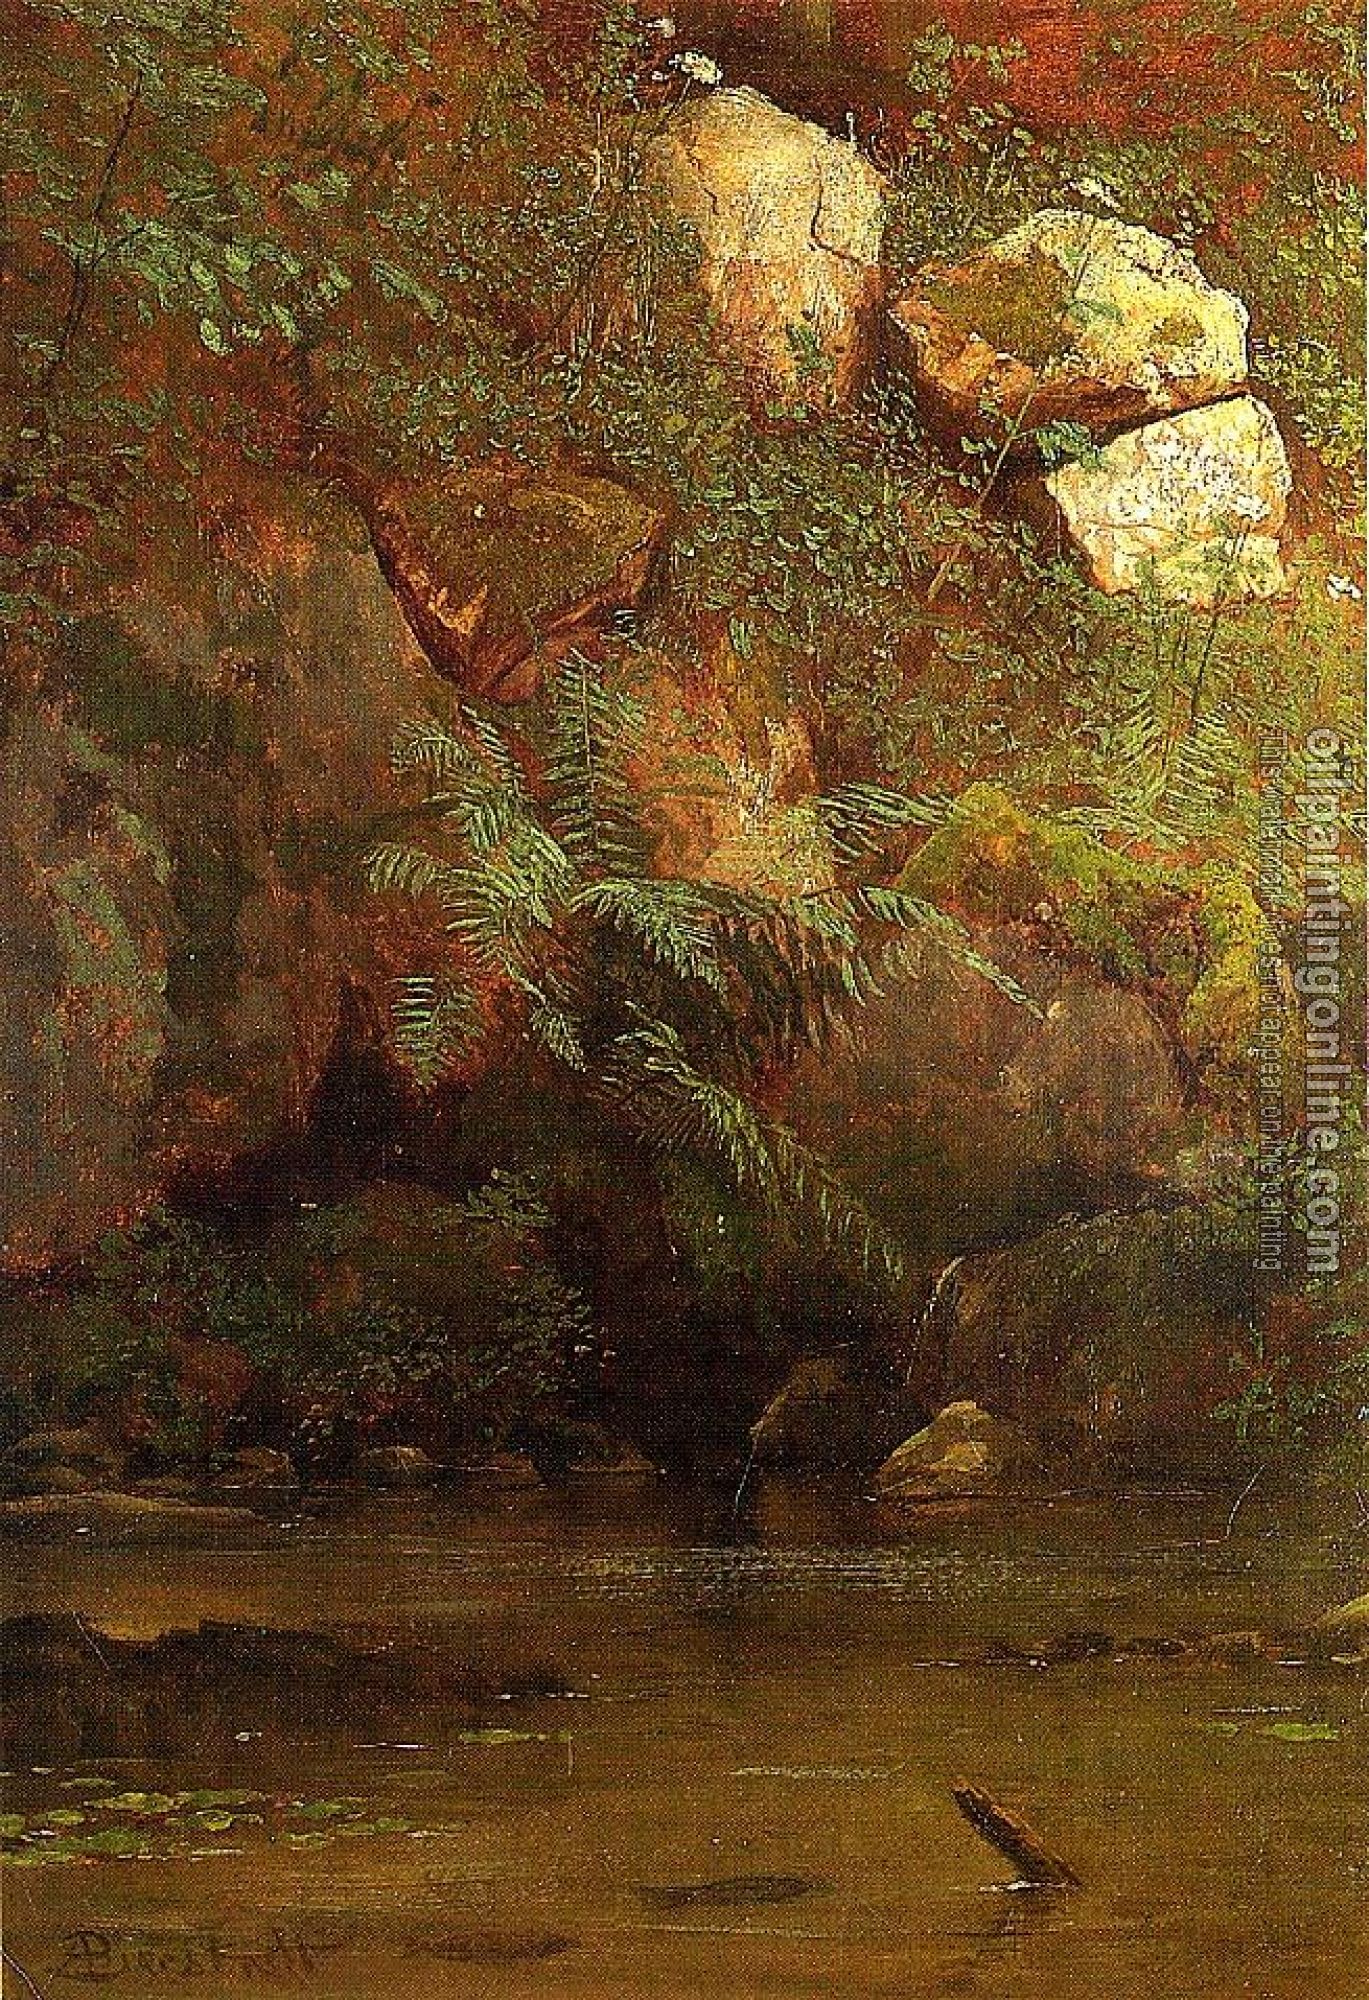 Bierstadt, Albert - Ferns and Rocks on an Embankment